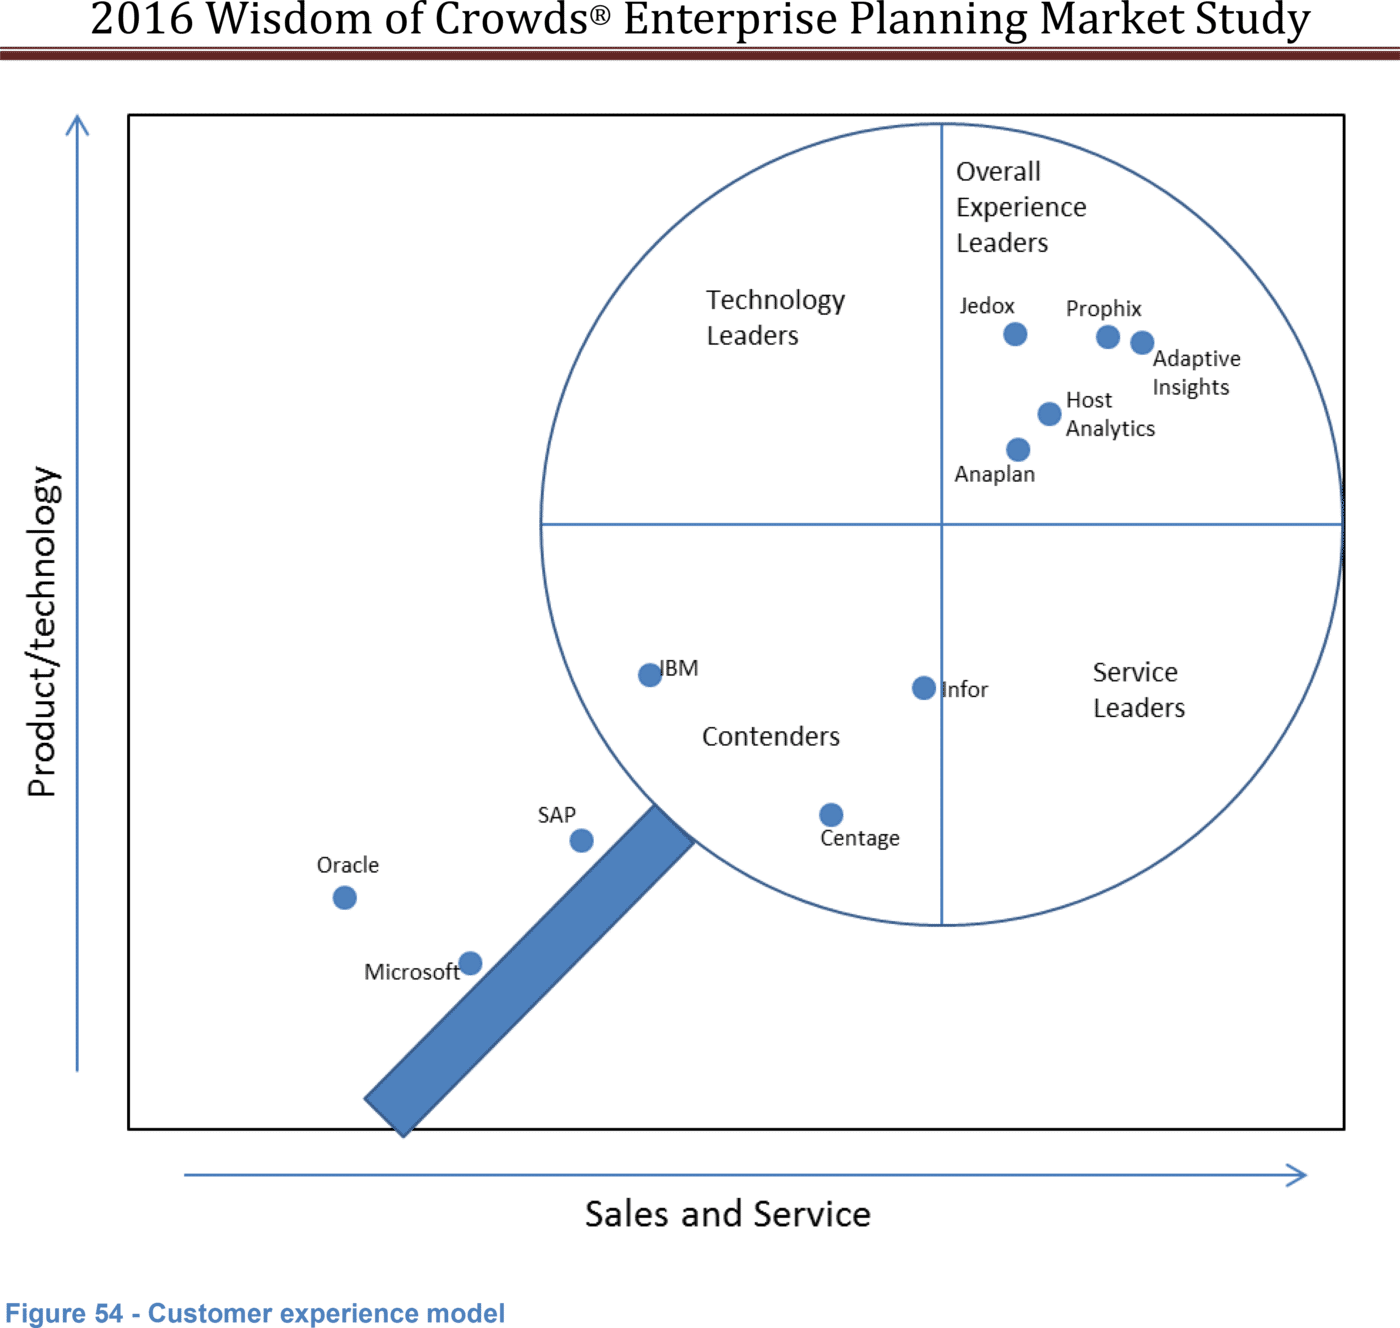 Abbildung 2: Dresner Markteinschätzung der in der Studie getesteten Planungslösungen (Quelle: „2016 Wisdom of Crowds Enterprise Planning Market“, Dresner Advisory Group)